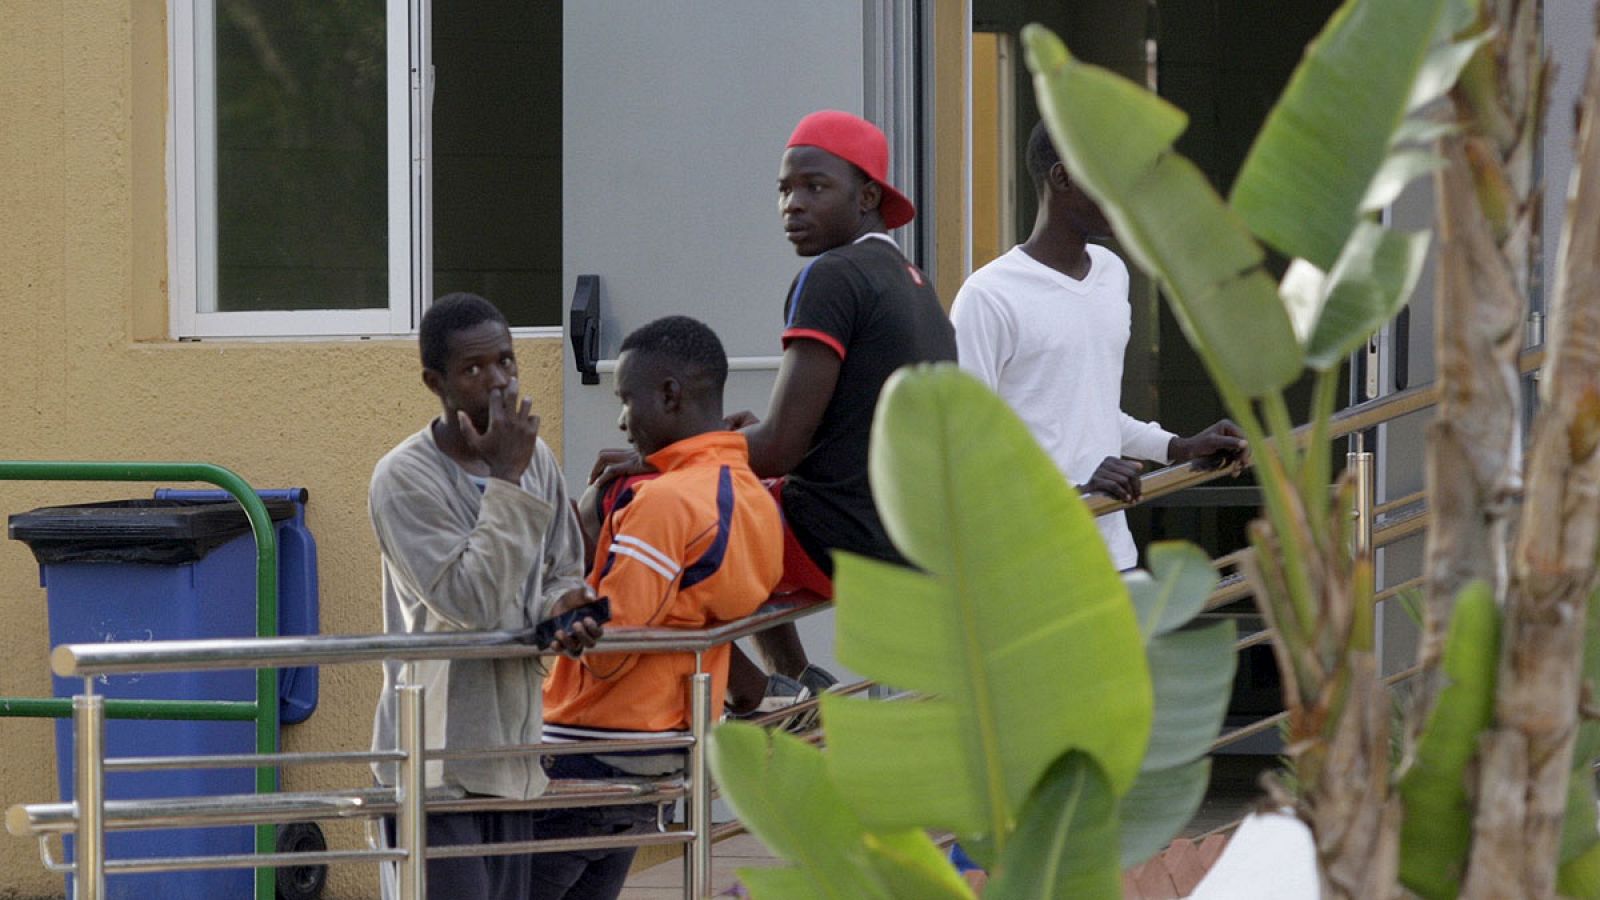 Decenas de inmigrantes llega al CETI de Melilla tras saltar la valla